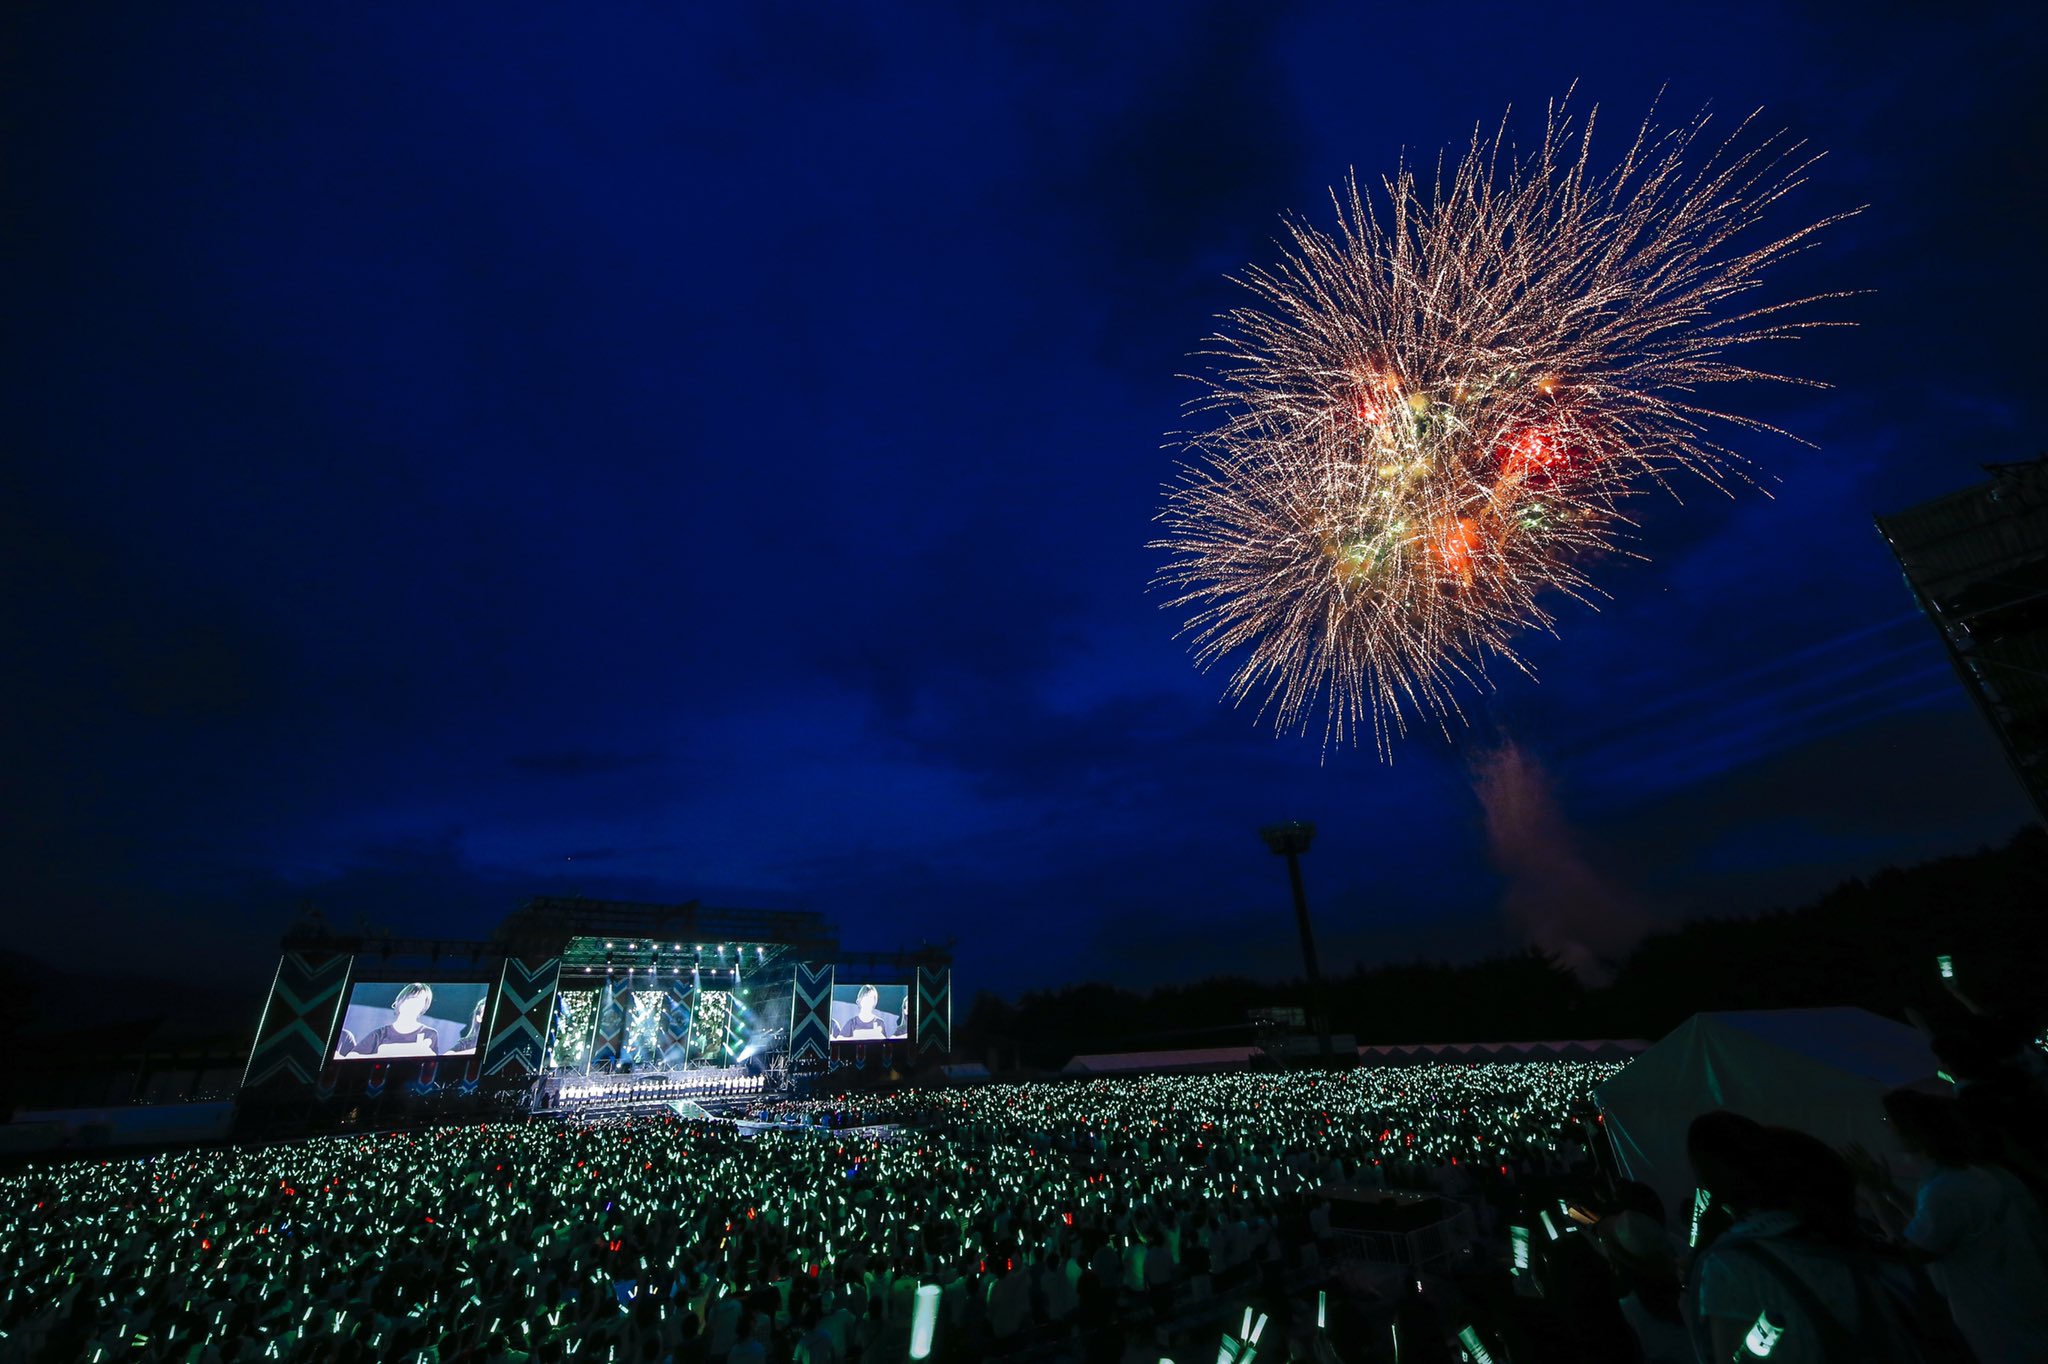 欅坂46 初の野外ライブで伝説の 欅共和国2017 鑑賞会 第二夜